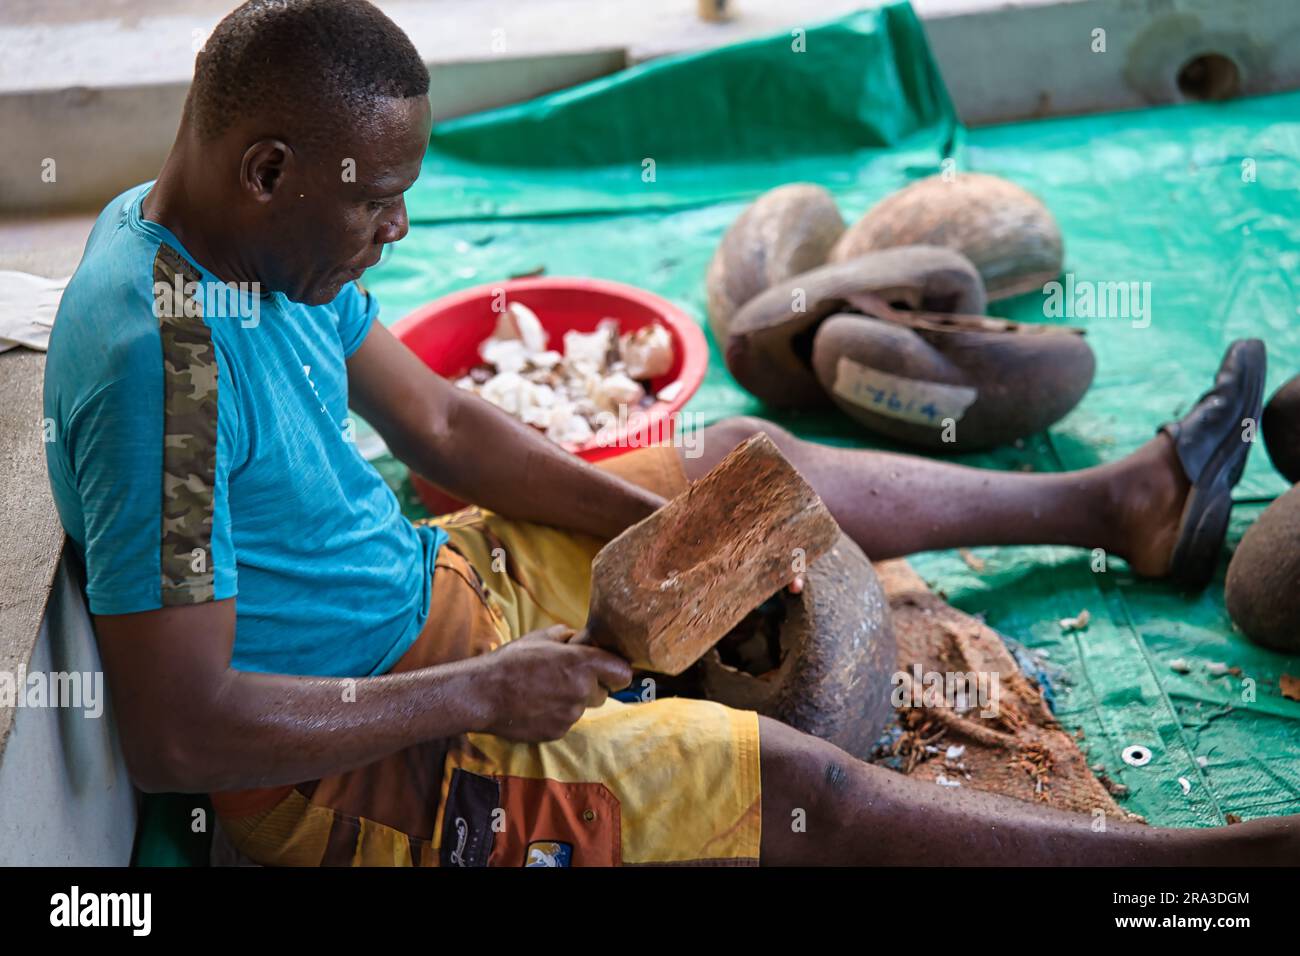 Usine des collections Coco de mer, homme enlevant la viande de coco de mer (ivoire végétal) à l'intérieur de la coquille en martelant la chair dure Banque D'Images